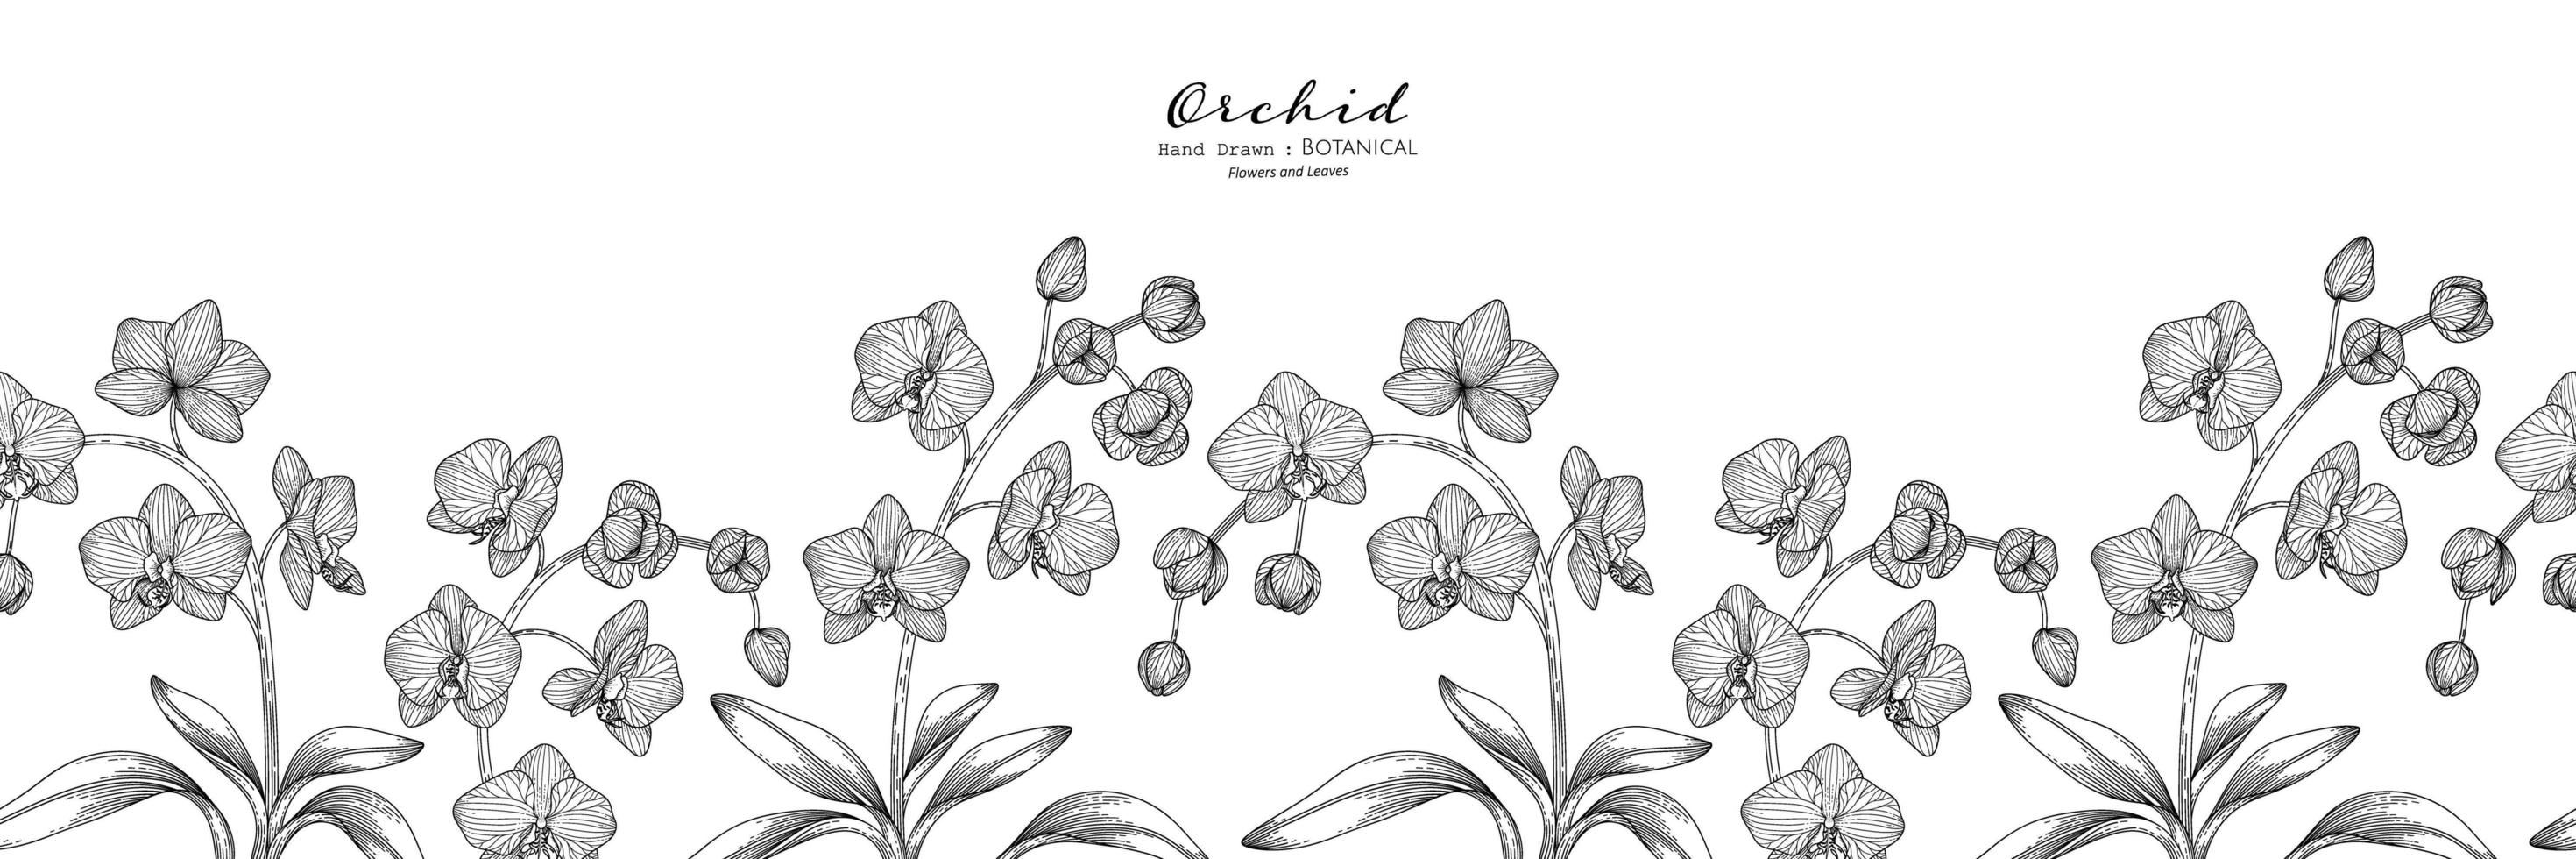 sömlös mönster orkidéblomma och blad handritad botanisk illustration med konturteckningar vektor